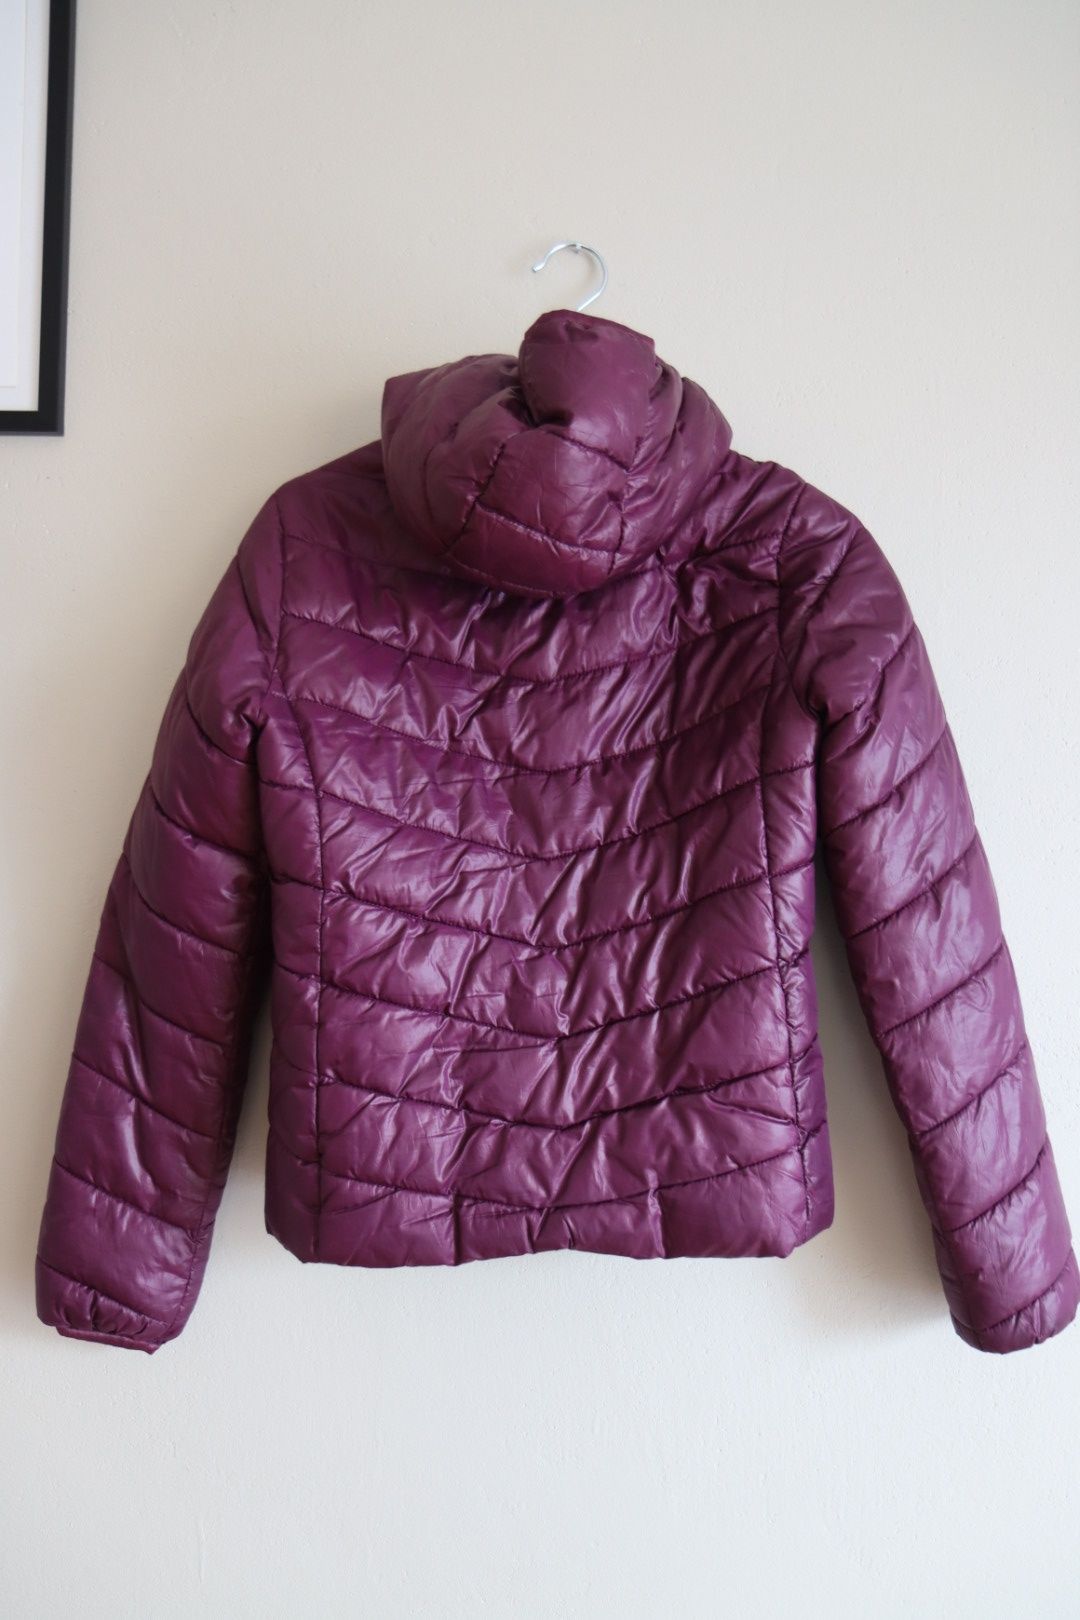 jesienna kurtka H&M pikowana fioletowa 158cm